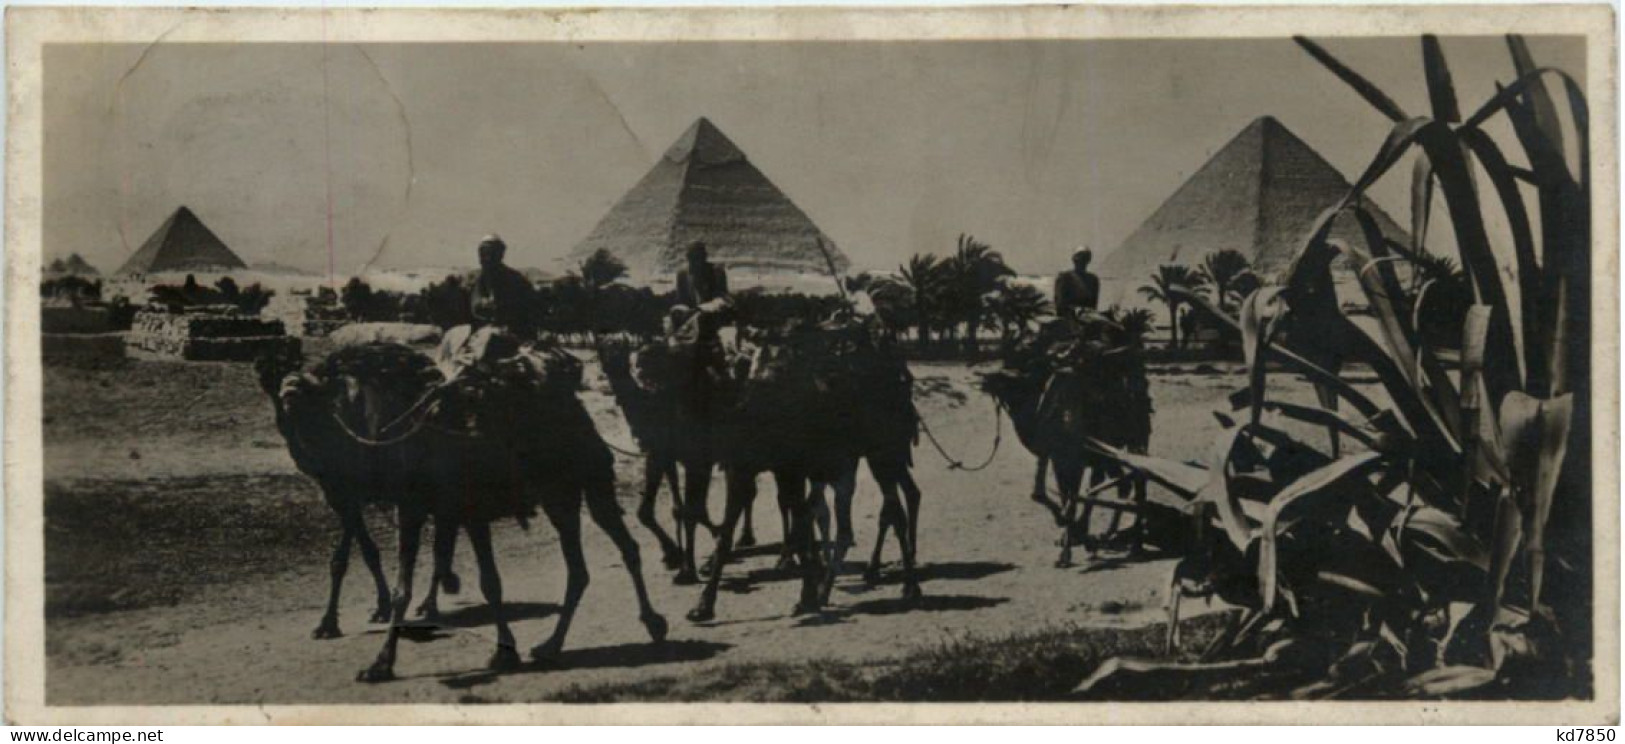 Ägypten - Pyramiden - Piramiden